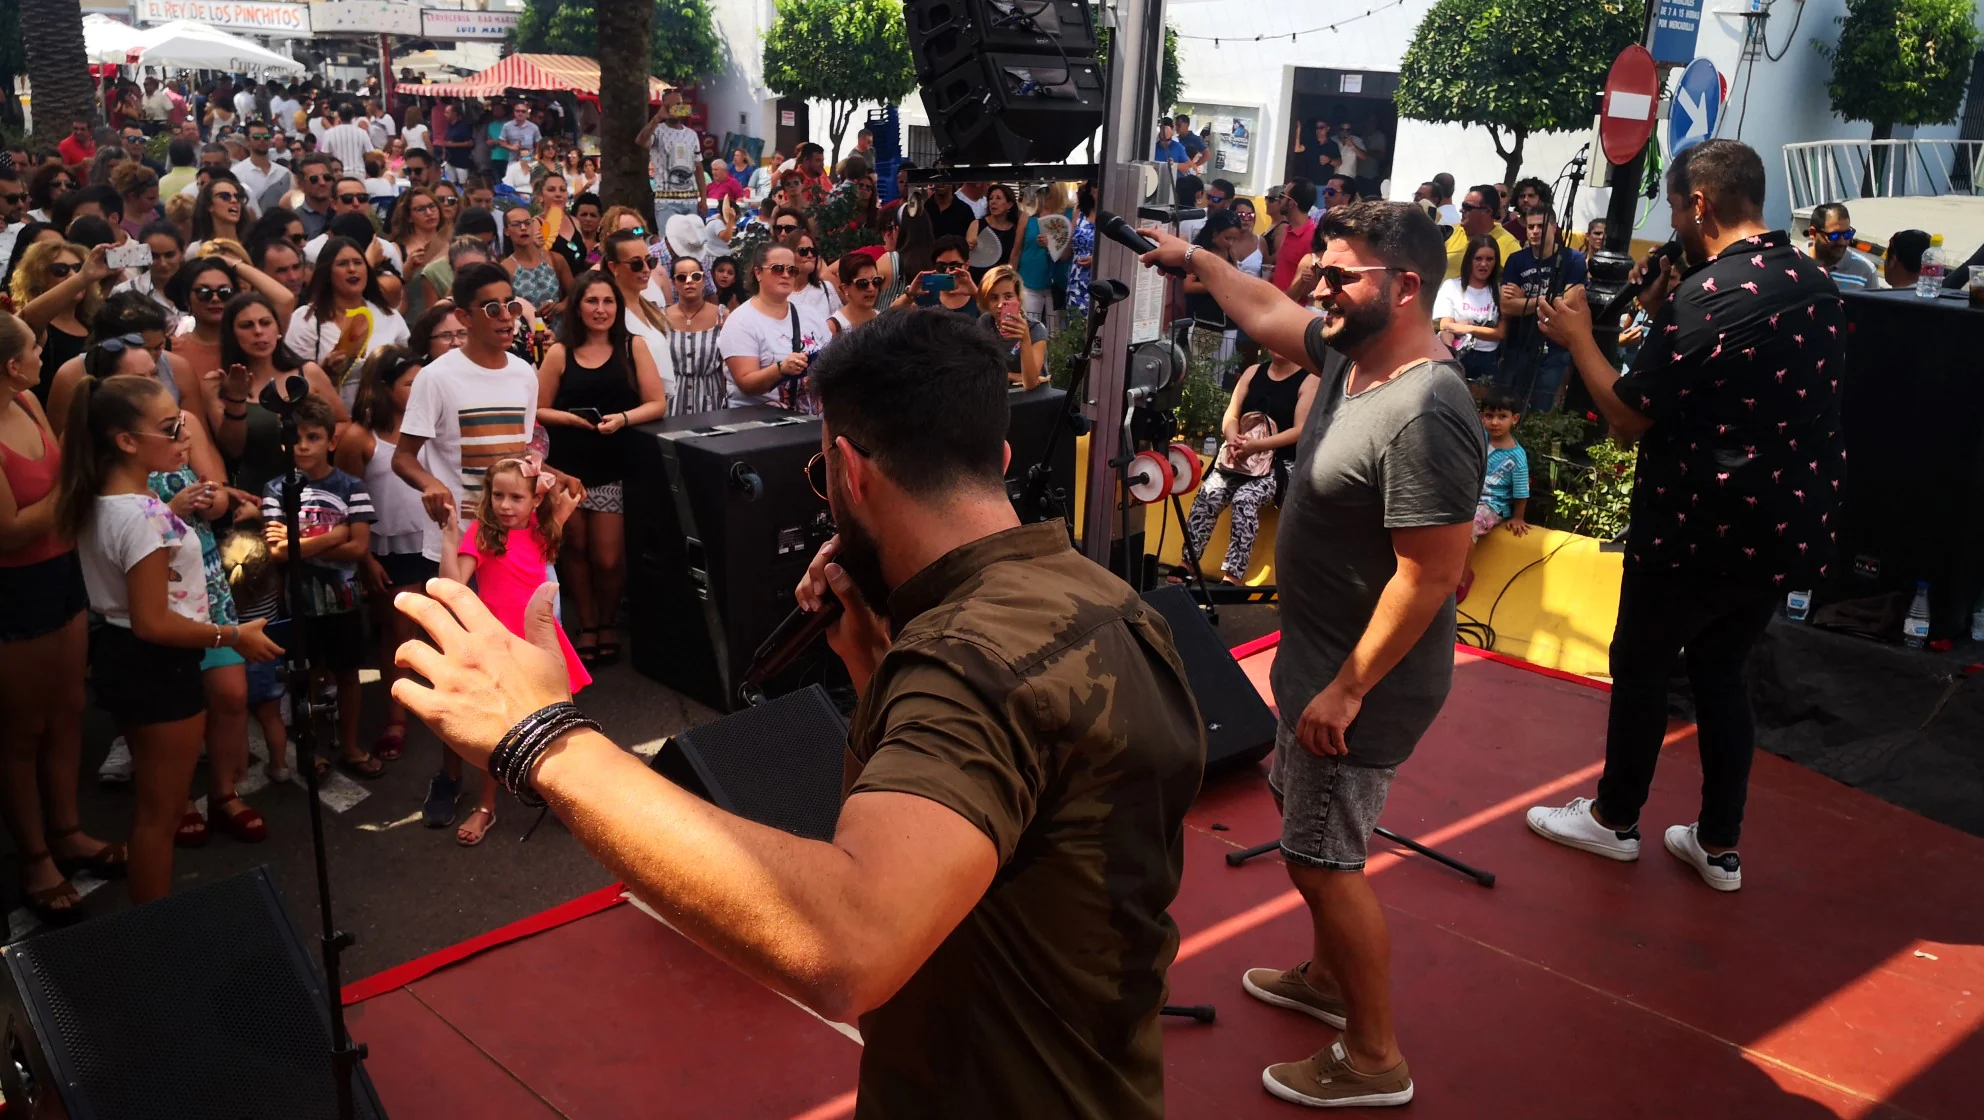 Algunas imágenes de las actividades del domingo de las Ferias y Fiestas de San Bartolomé 2018 (25-08-2019)